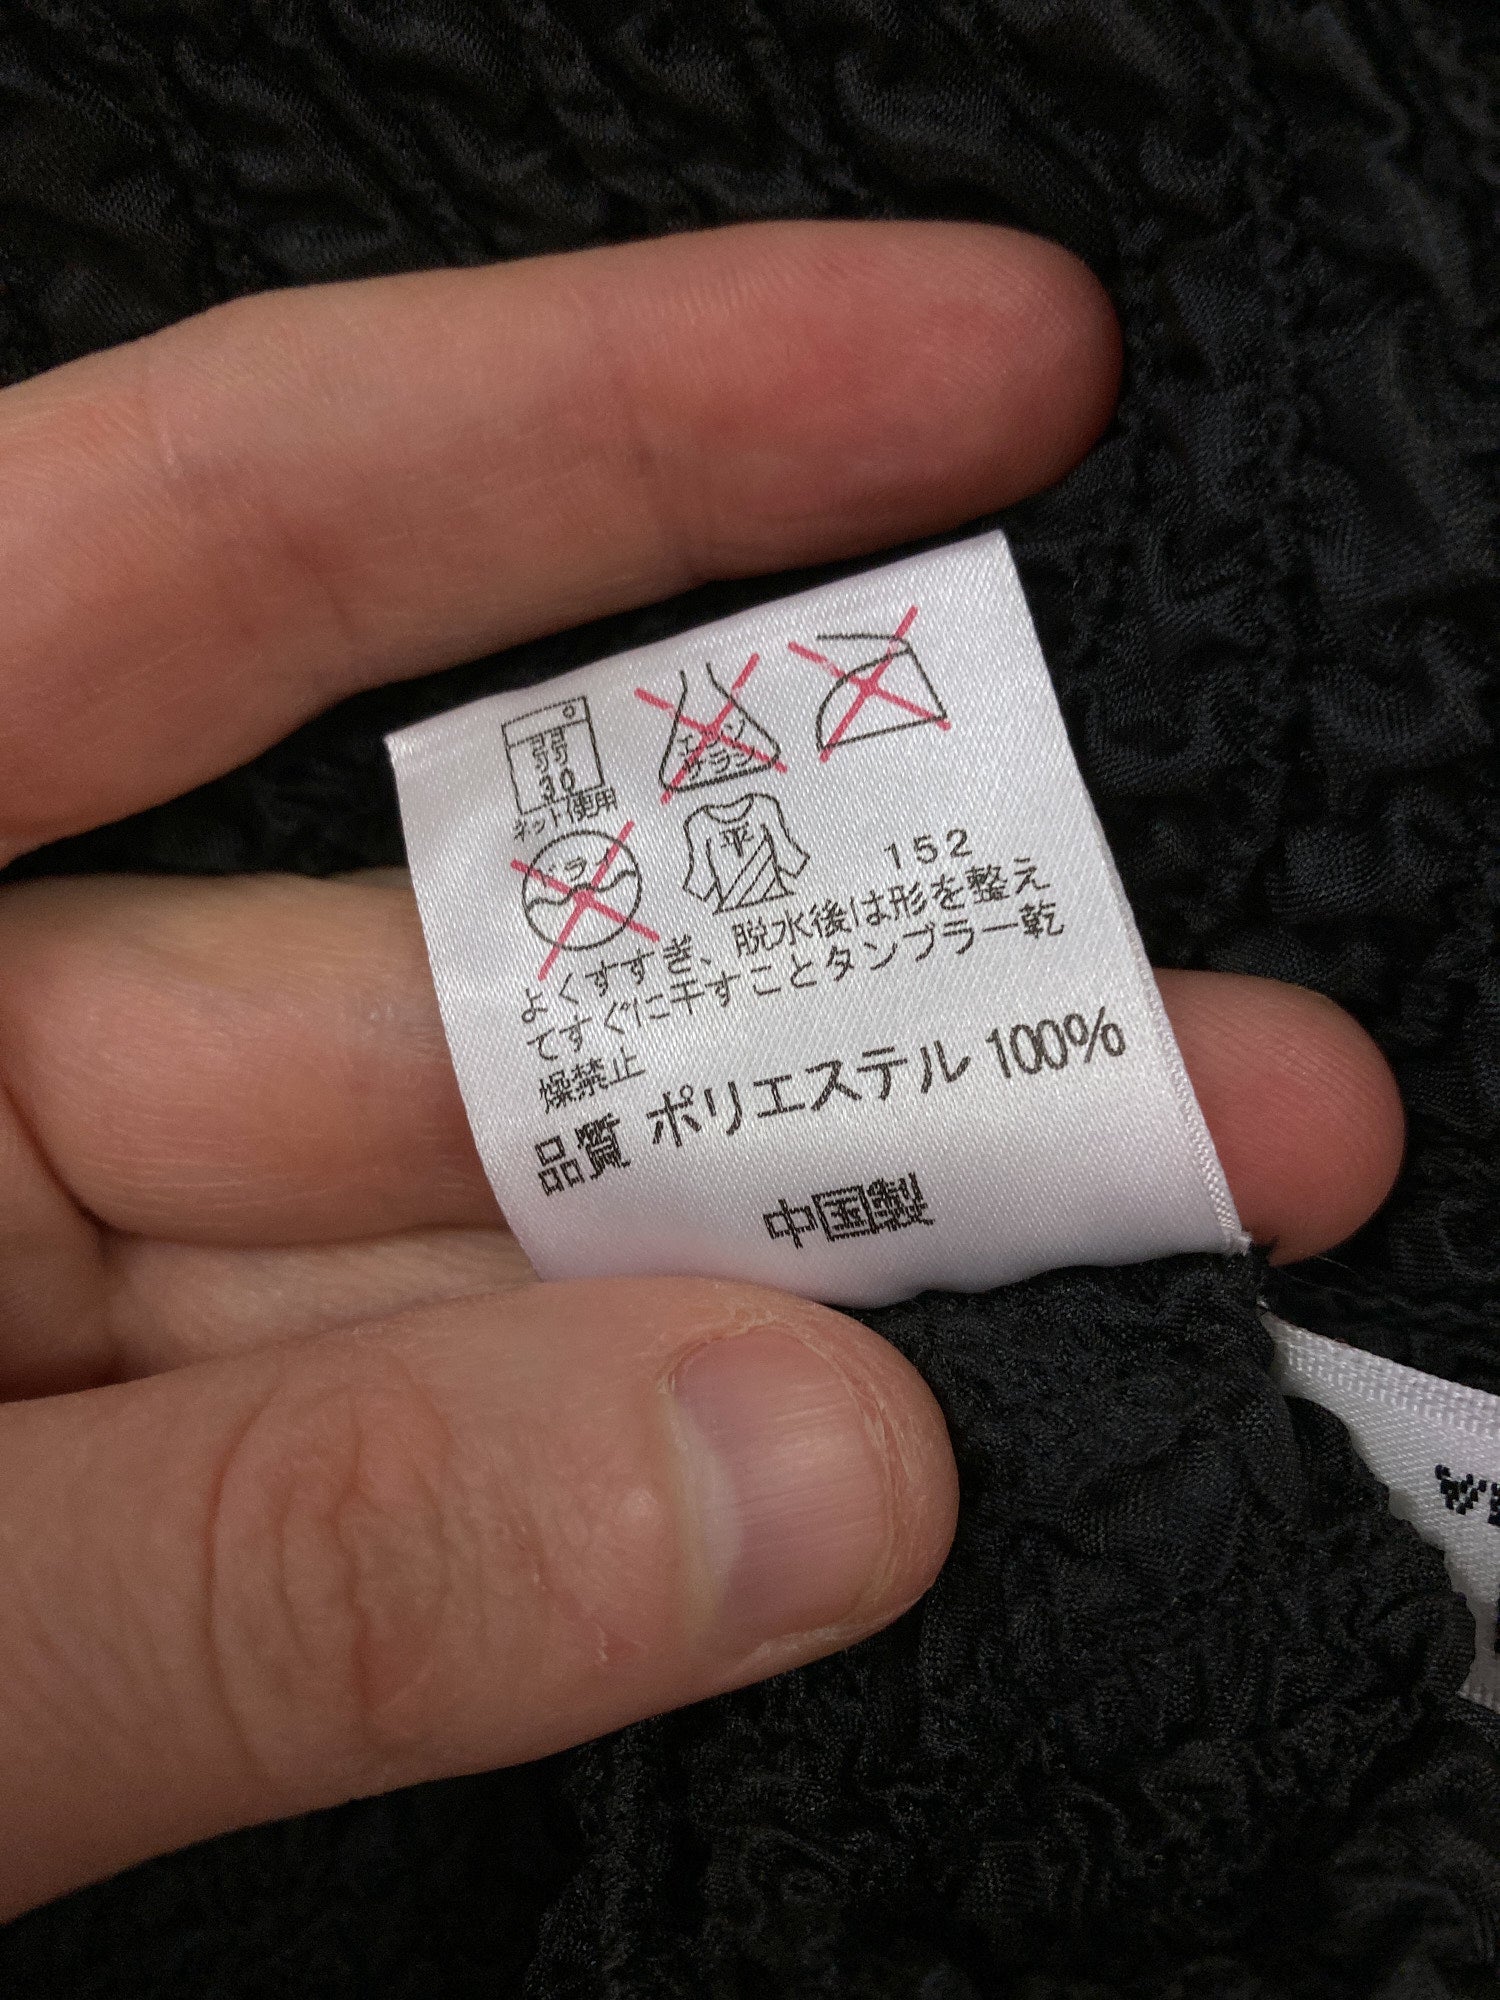 Yoshiki Hishinuma Peplum black wrinkled polyester cardigan and skirt set - S M